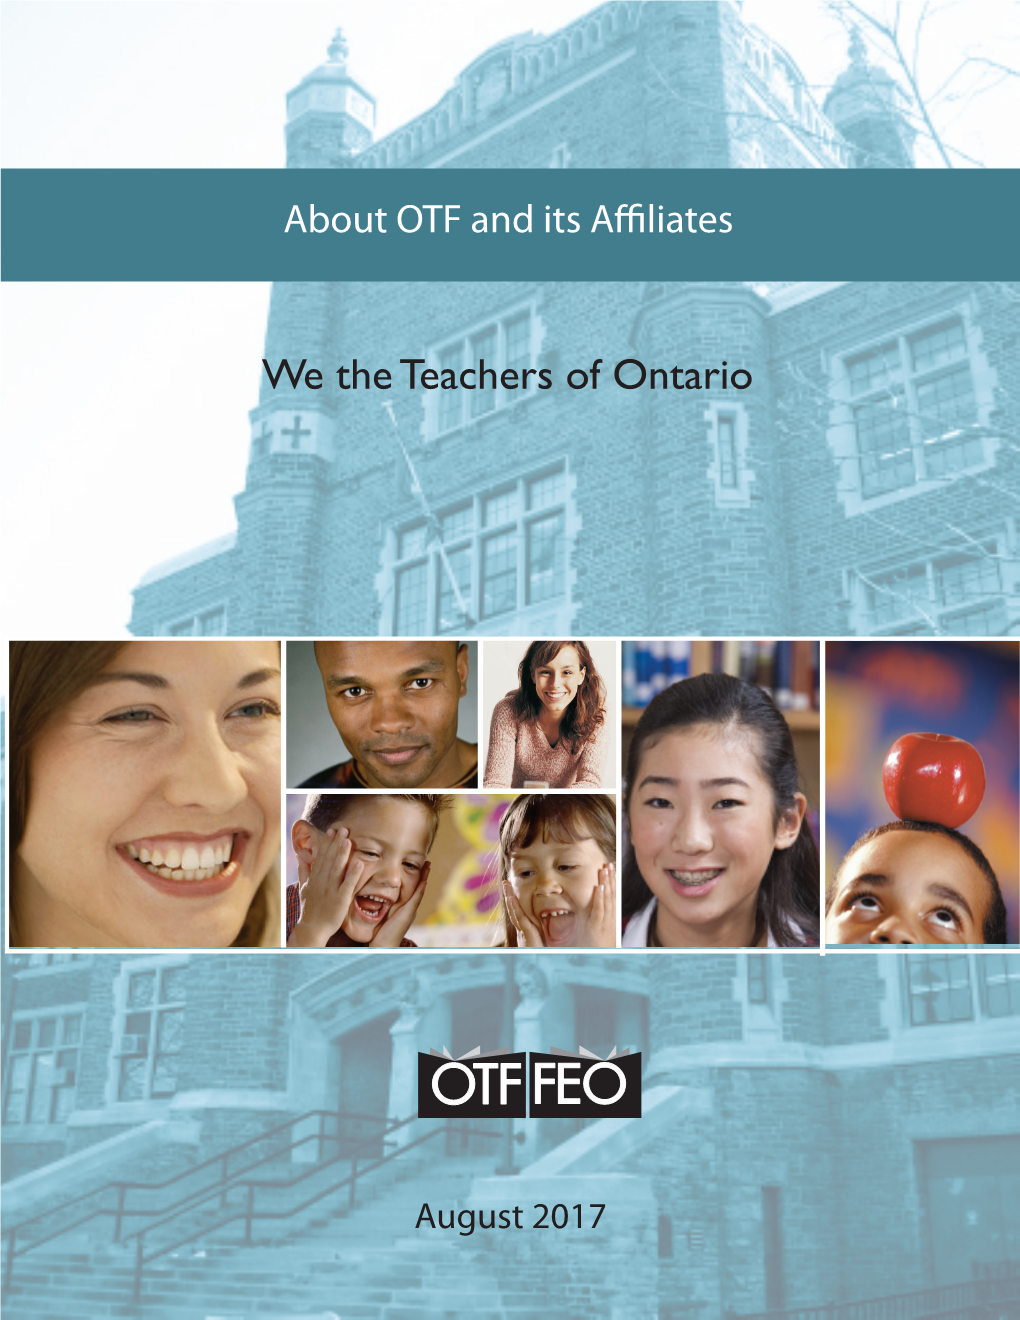 We the Teachers of Ontario